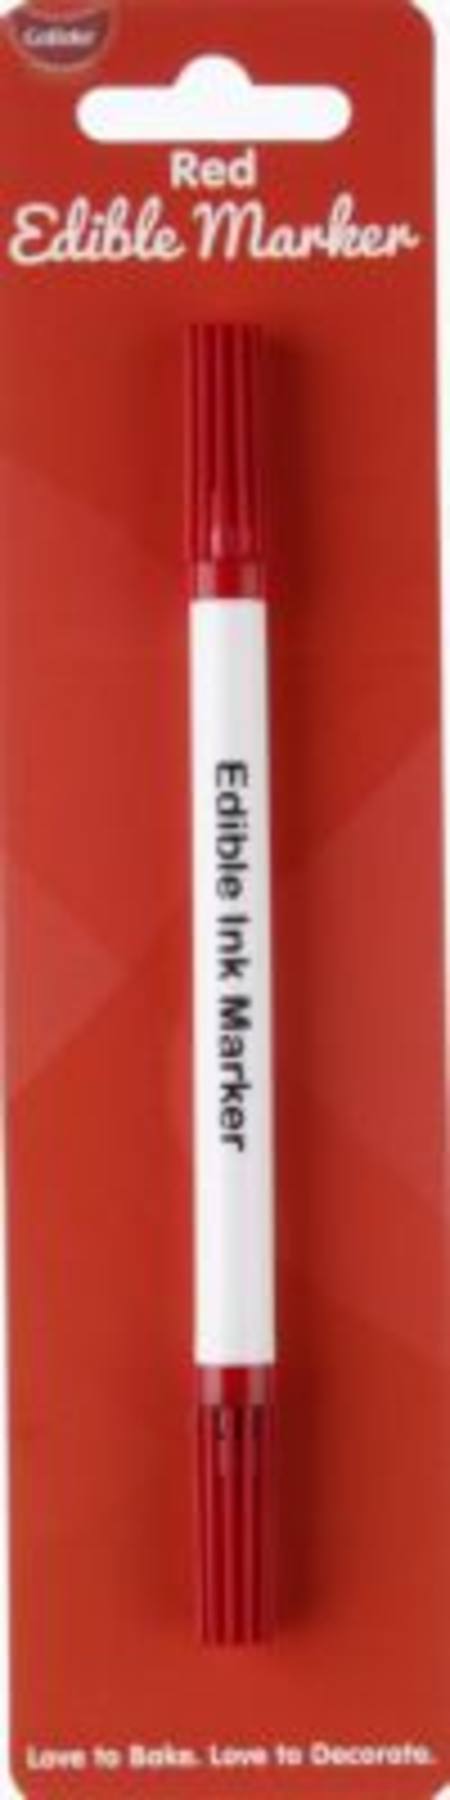 Buy Edible Marker Pen Red in NZ. 